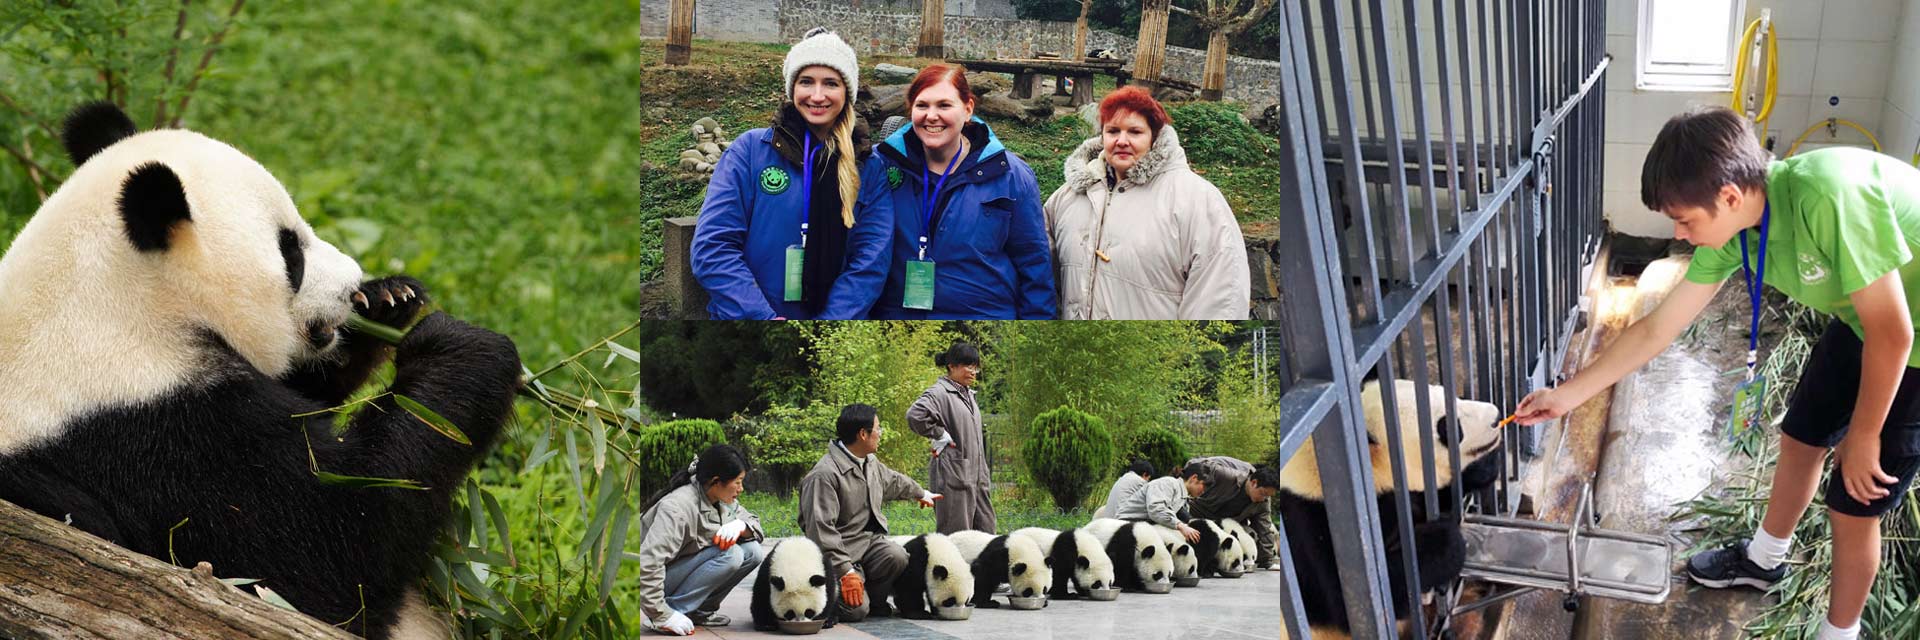 1 Day Giant Panda Volunteer Keeper Tour